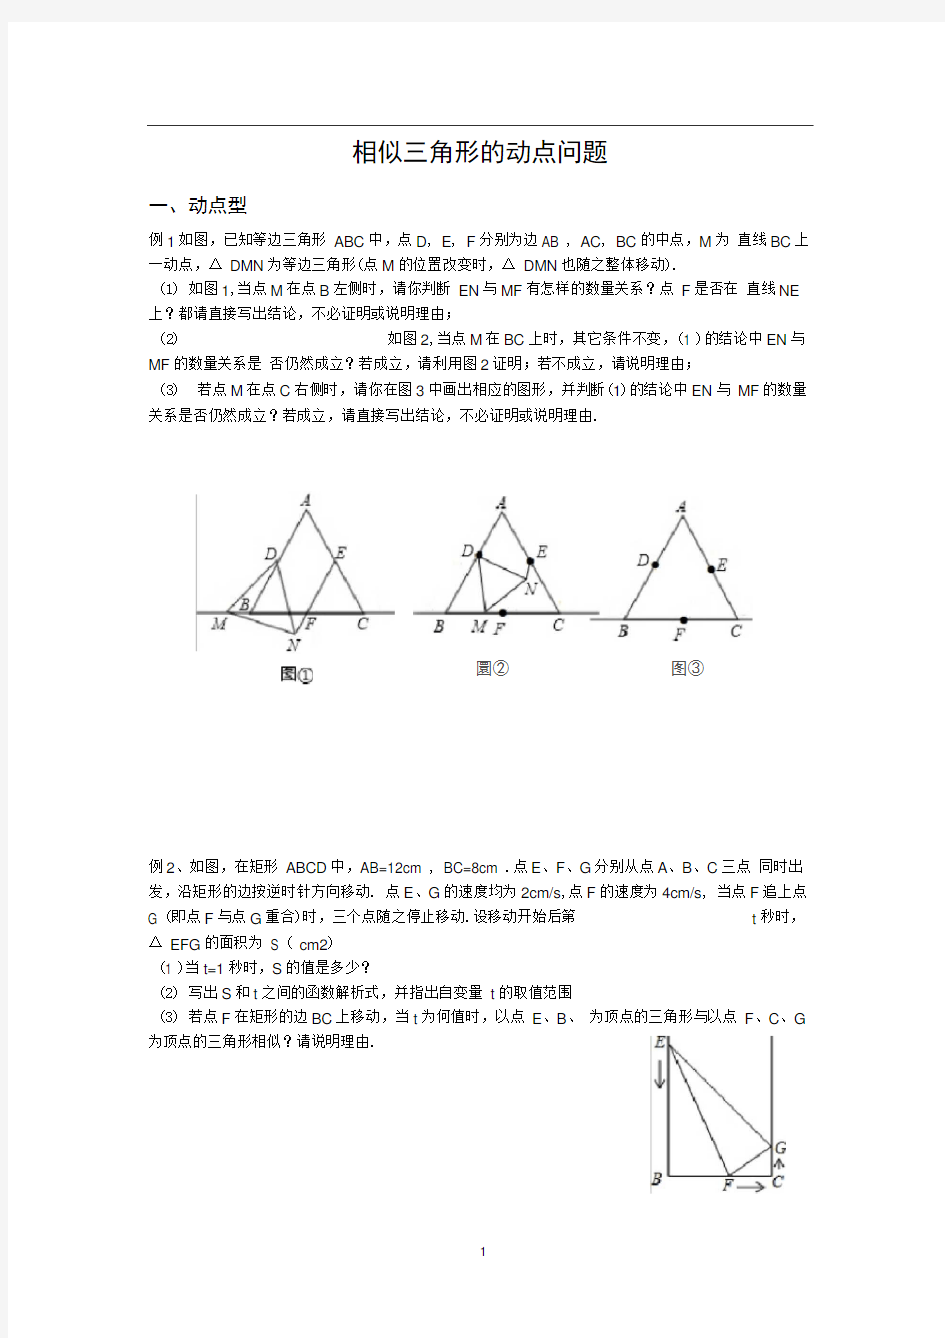 完整版相似三角形的动点问题题型整理